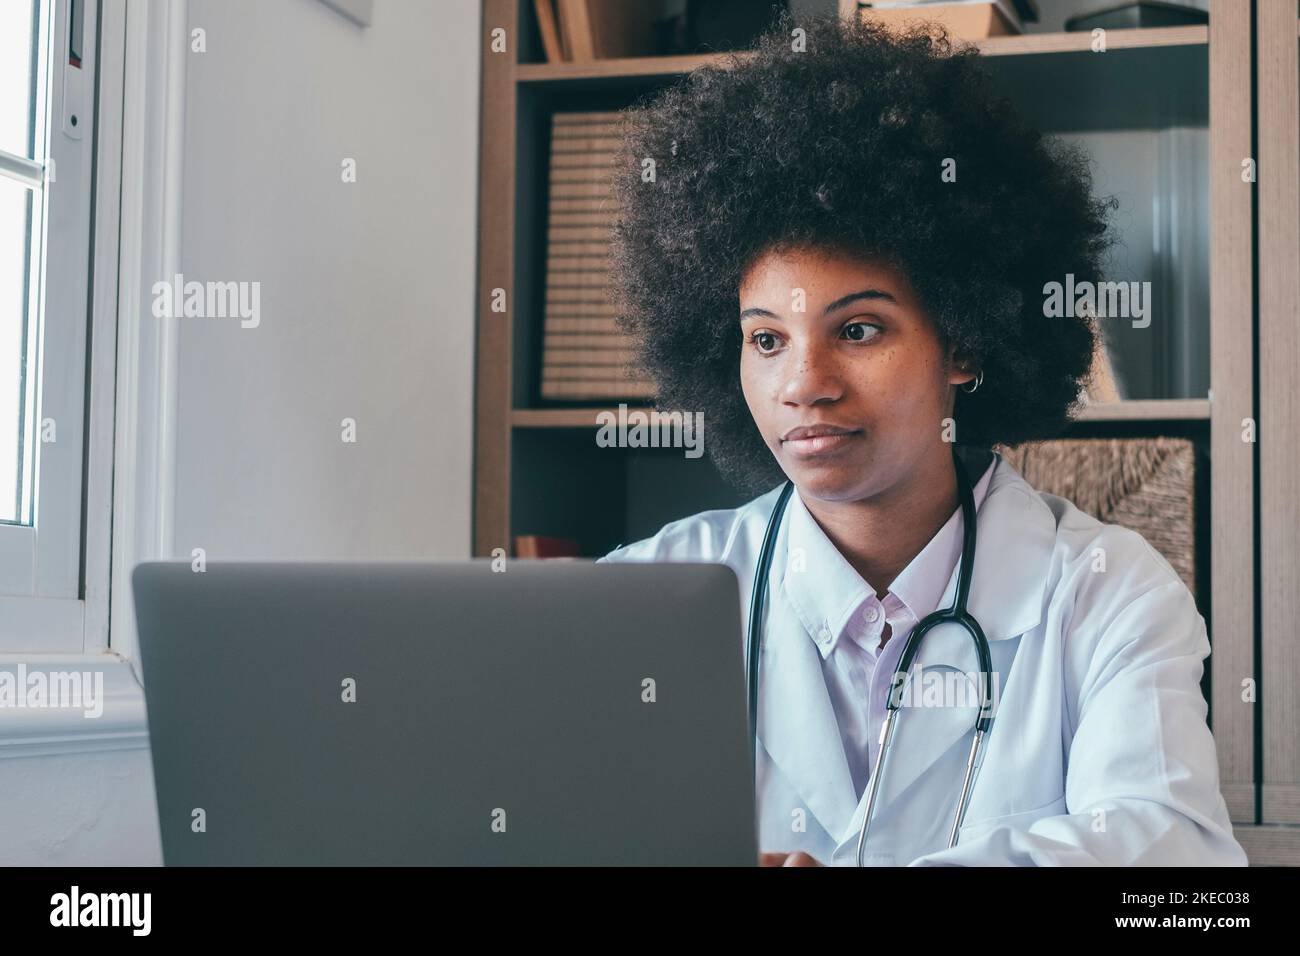 Femme médecin professionnel portant un uniforme consultant patient client en ligne par appel vidéo regardant l'écran d'ordinateur portable. Femme afro-américaine de soins de santé utilisant un ordinateur portable à la clinique médicale Banque D'Images